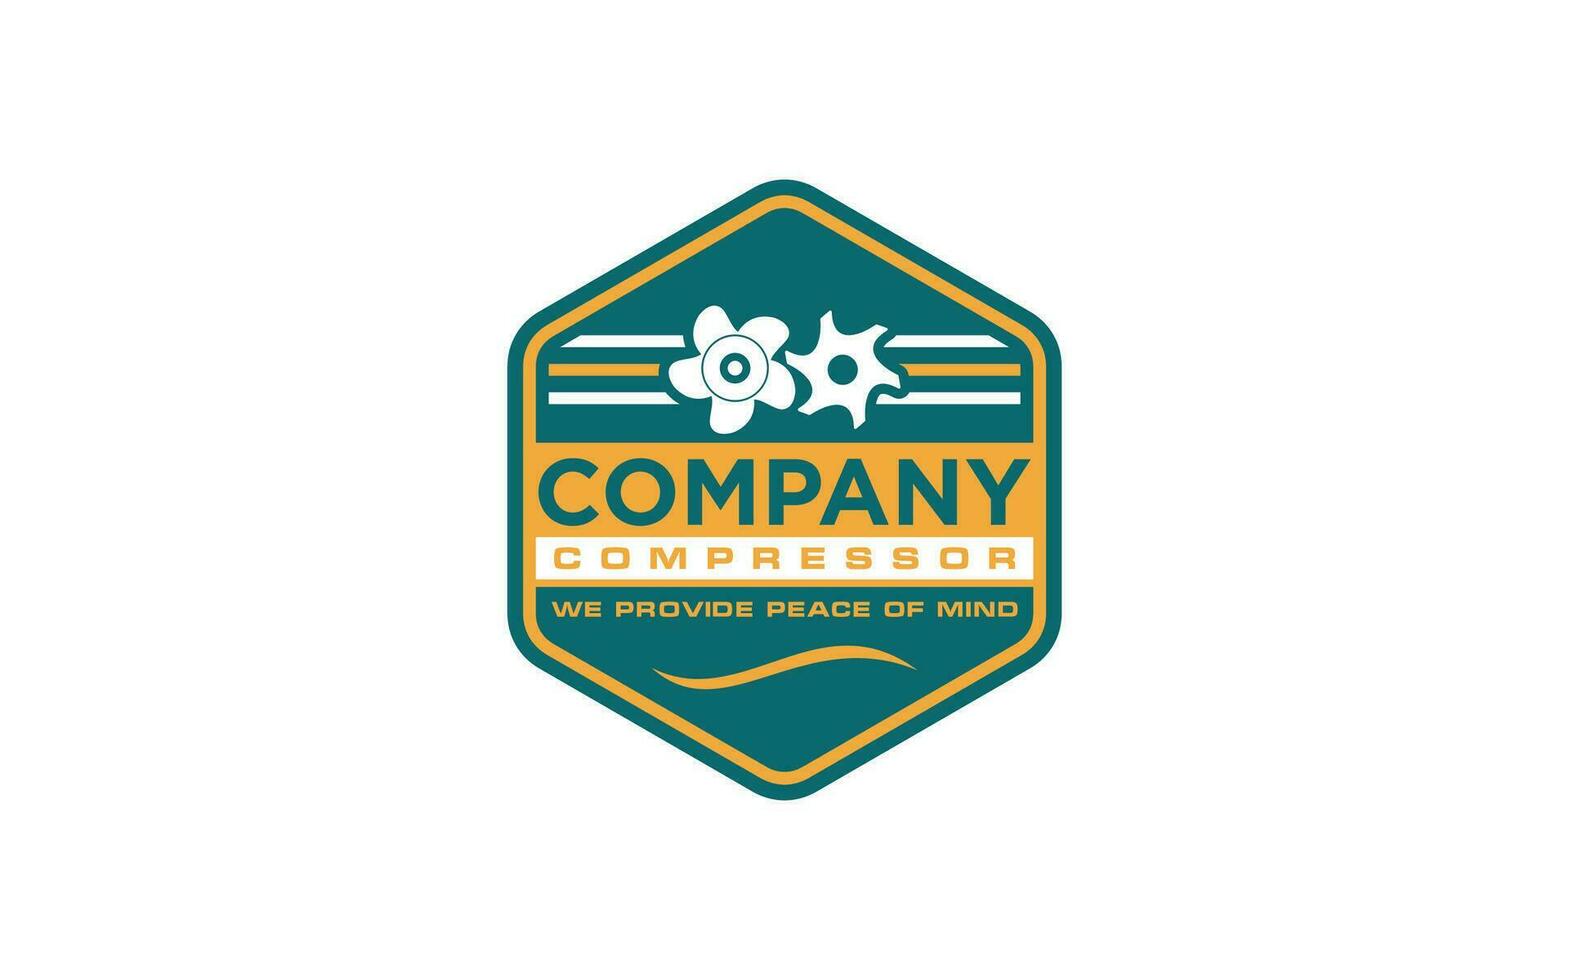 emblema retro industrias logos para insignias y etiquetas vector